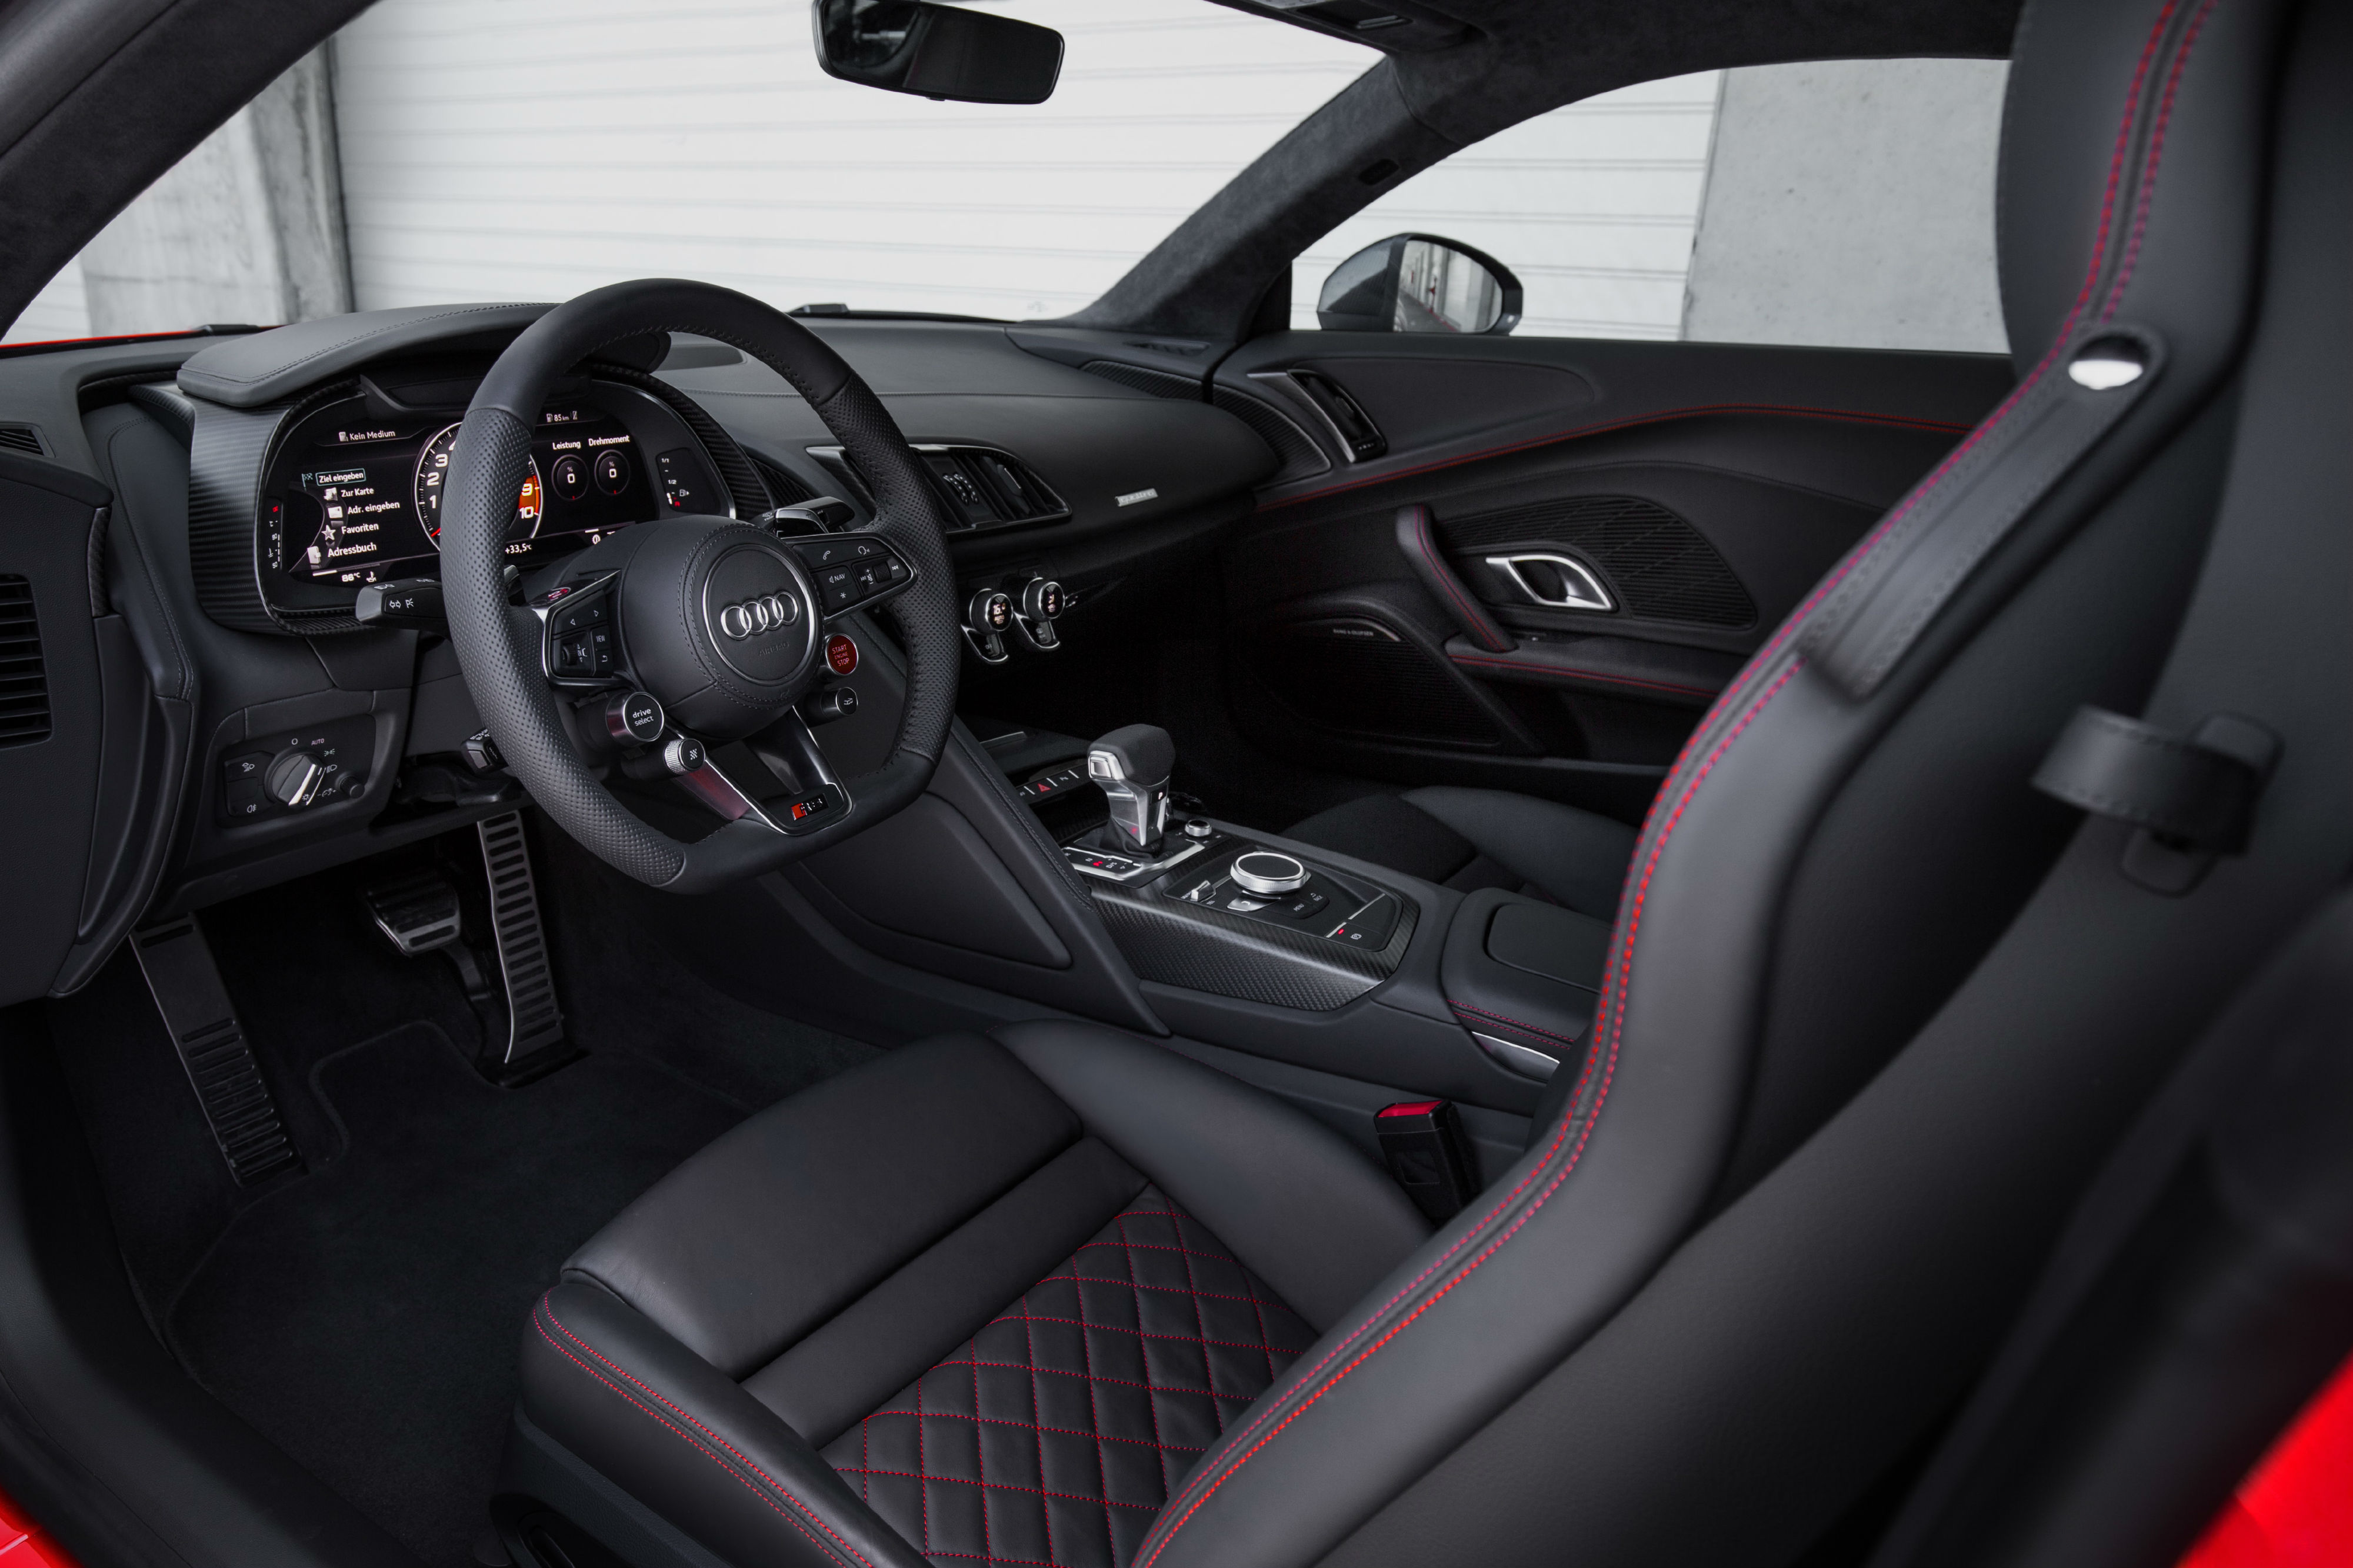 2016 Audi R8 V10 plus interior